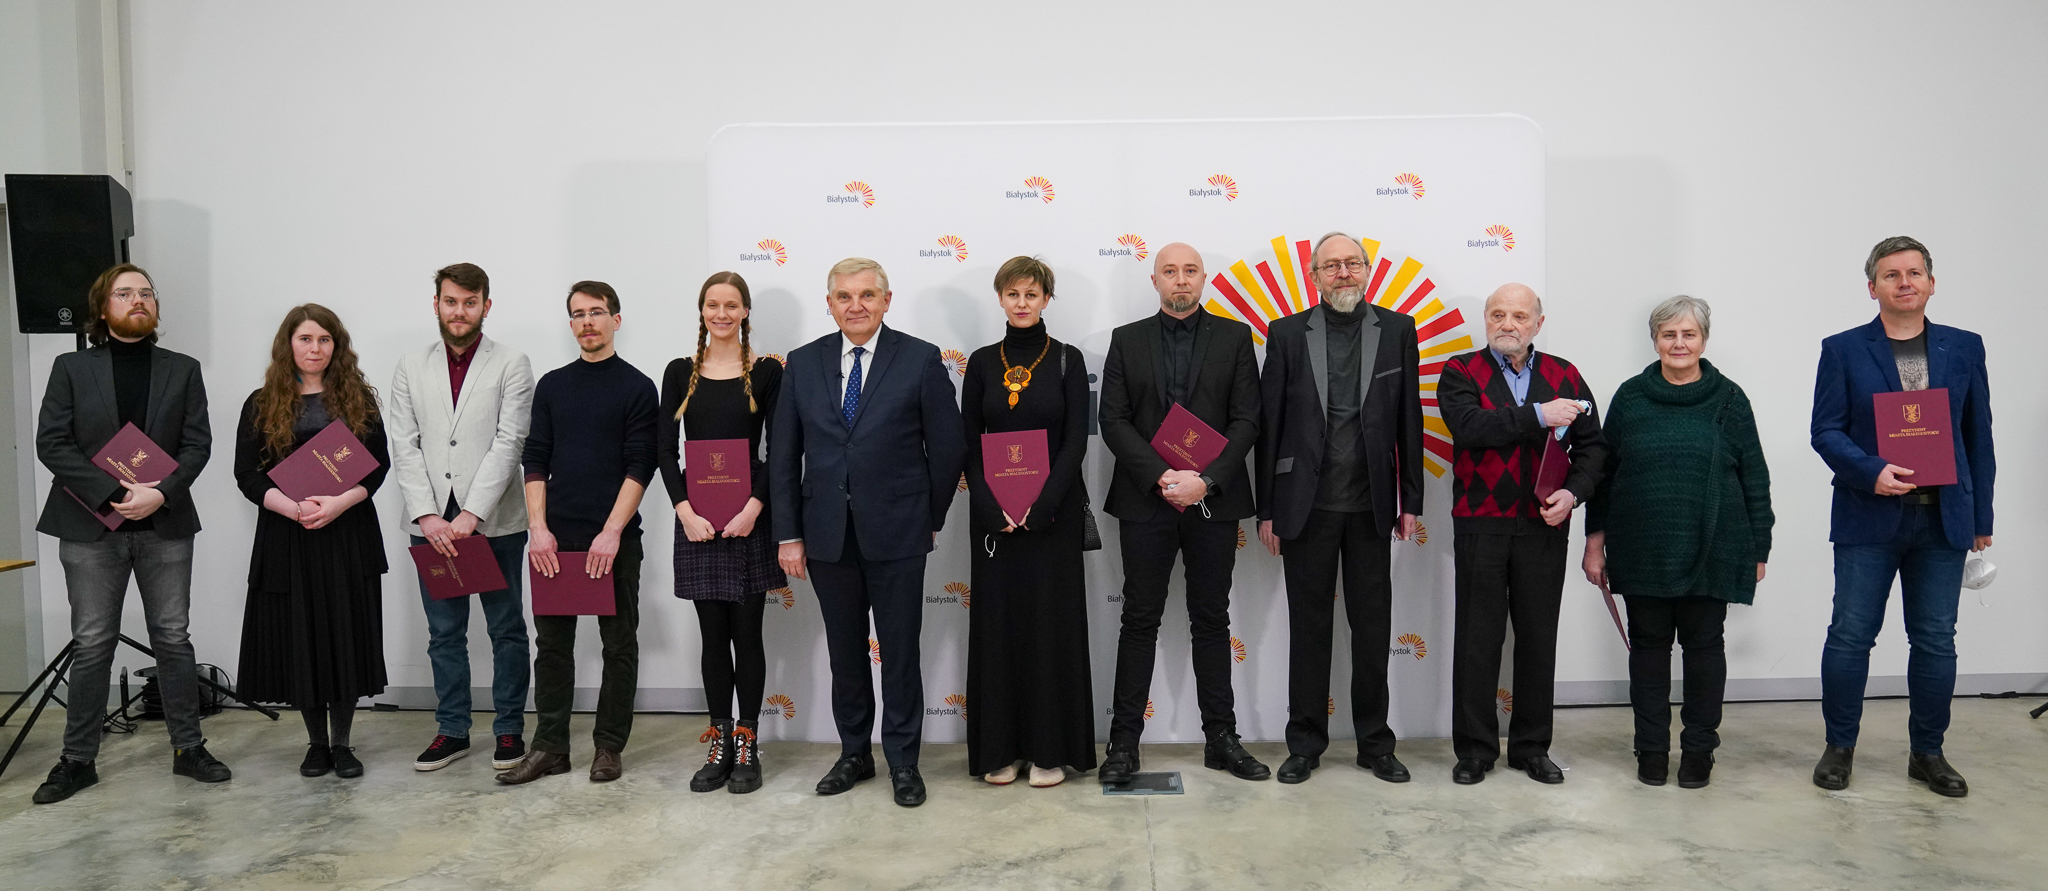 Stypendyści i prezydent Tadeusz Truskolaski pozują do pamiątkowego zdjęcia